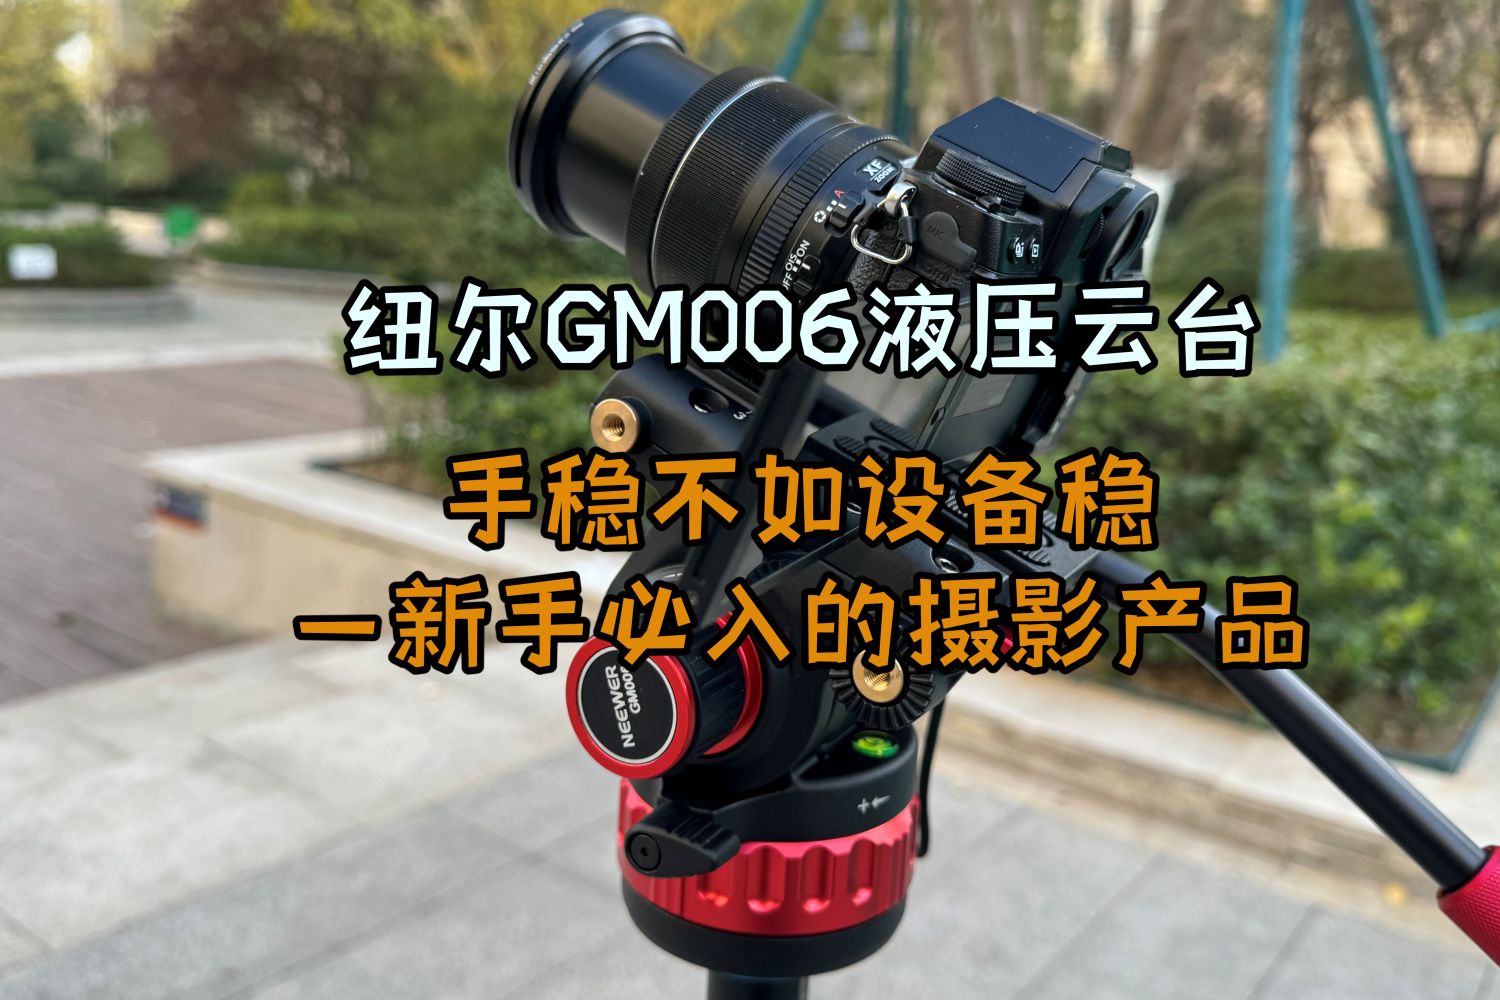 纽尔GM006液压云台才是提升摄影技术的好帮手